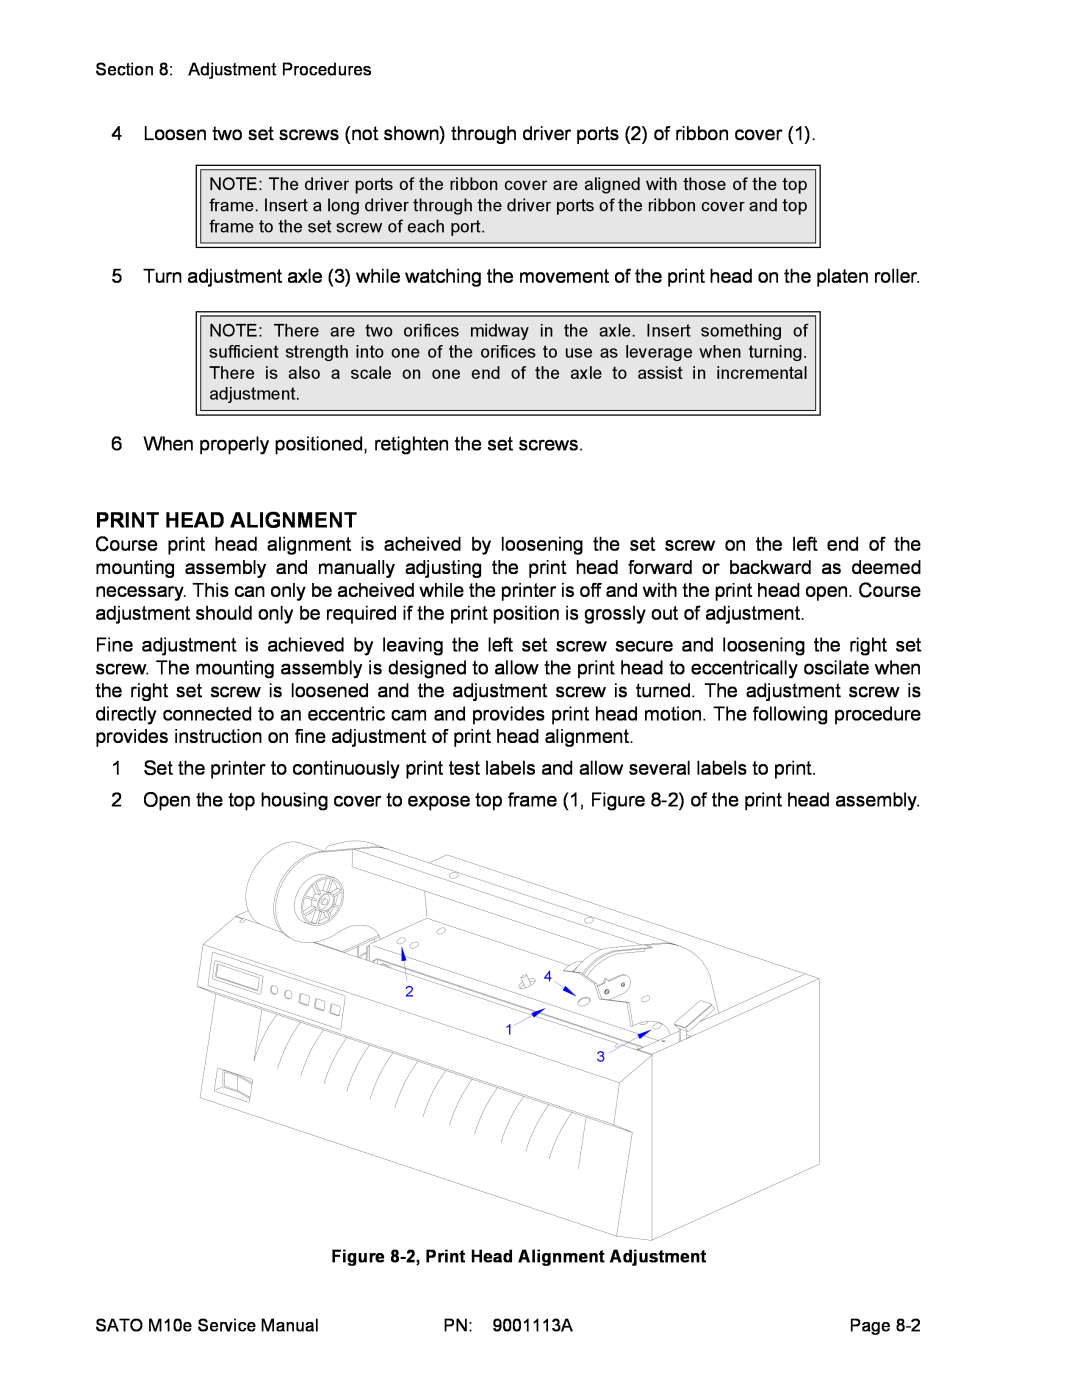 SATO 10e service manual Print Head Alignment 